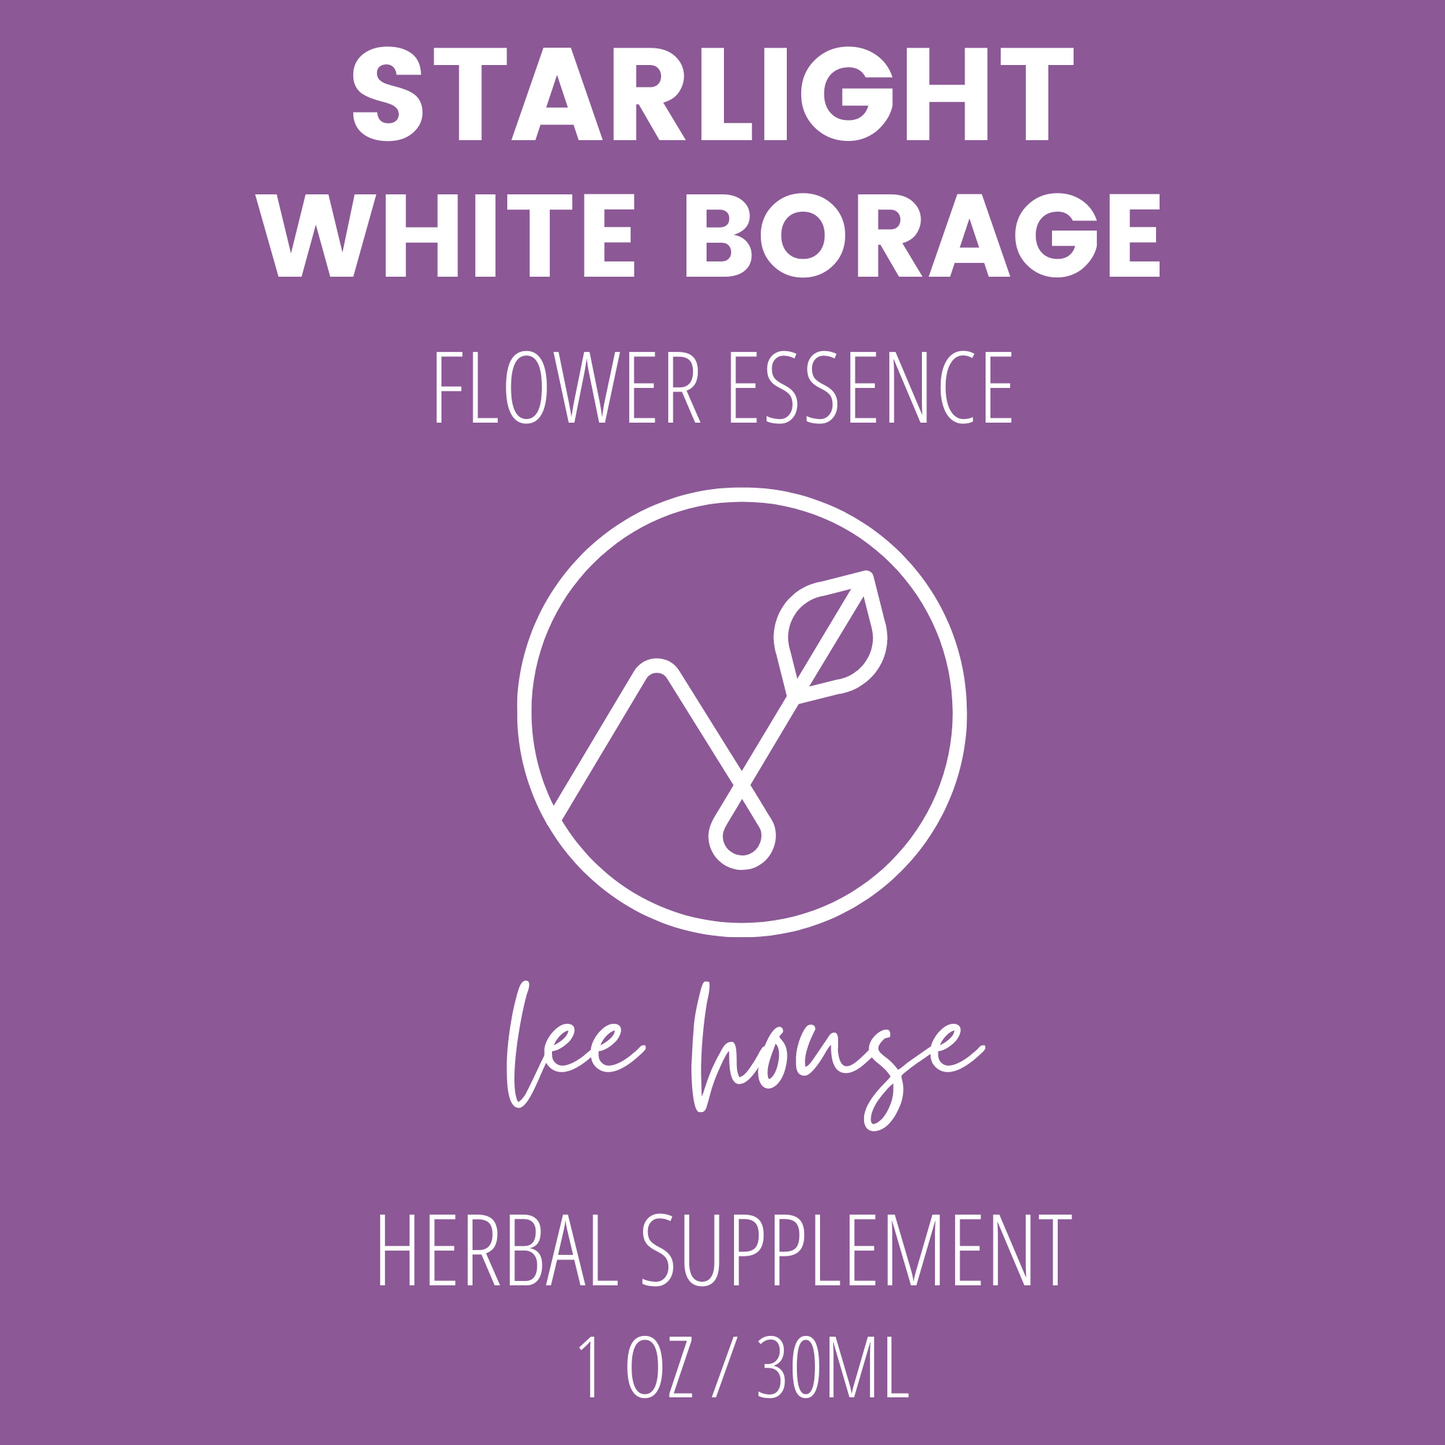 Starlight: White Borage Flower Essence